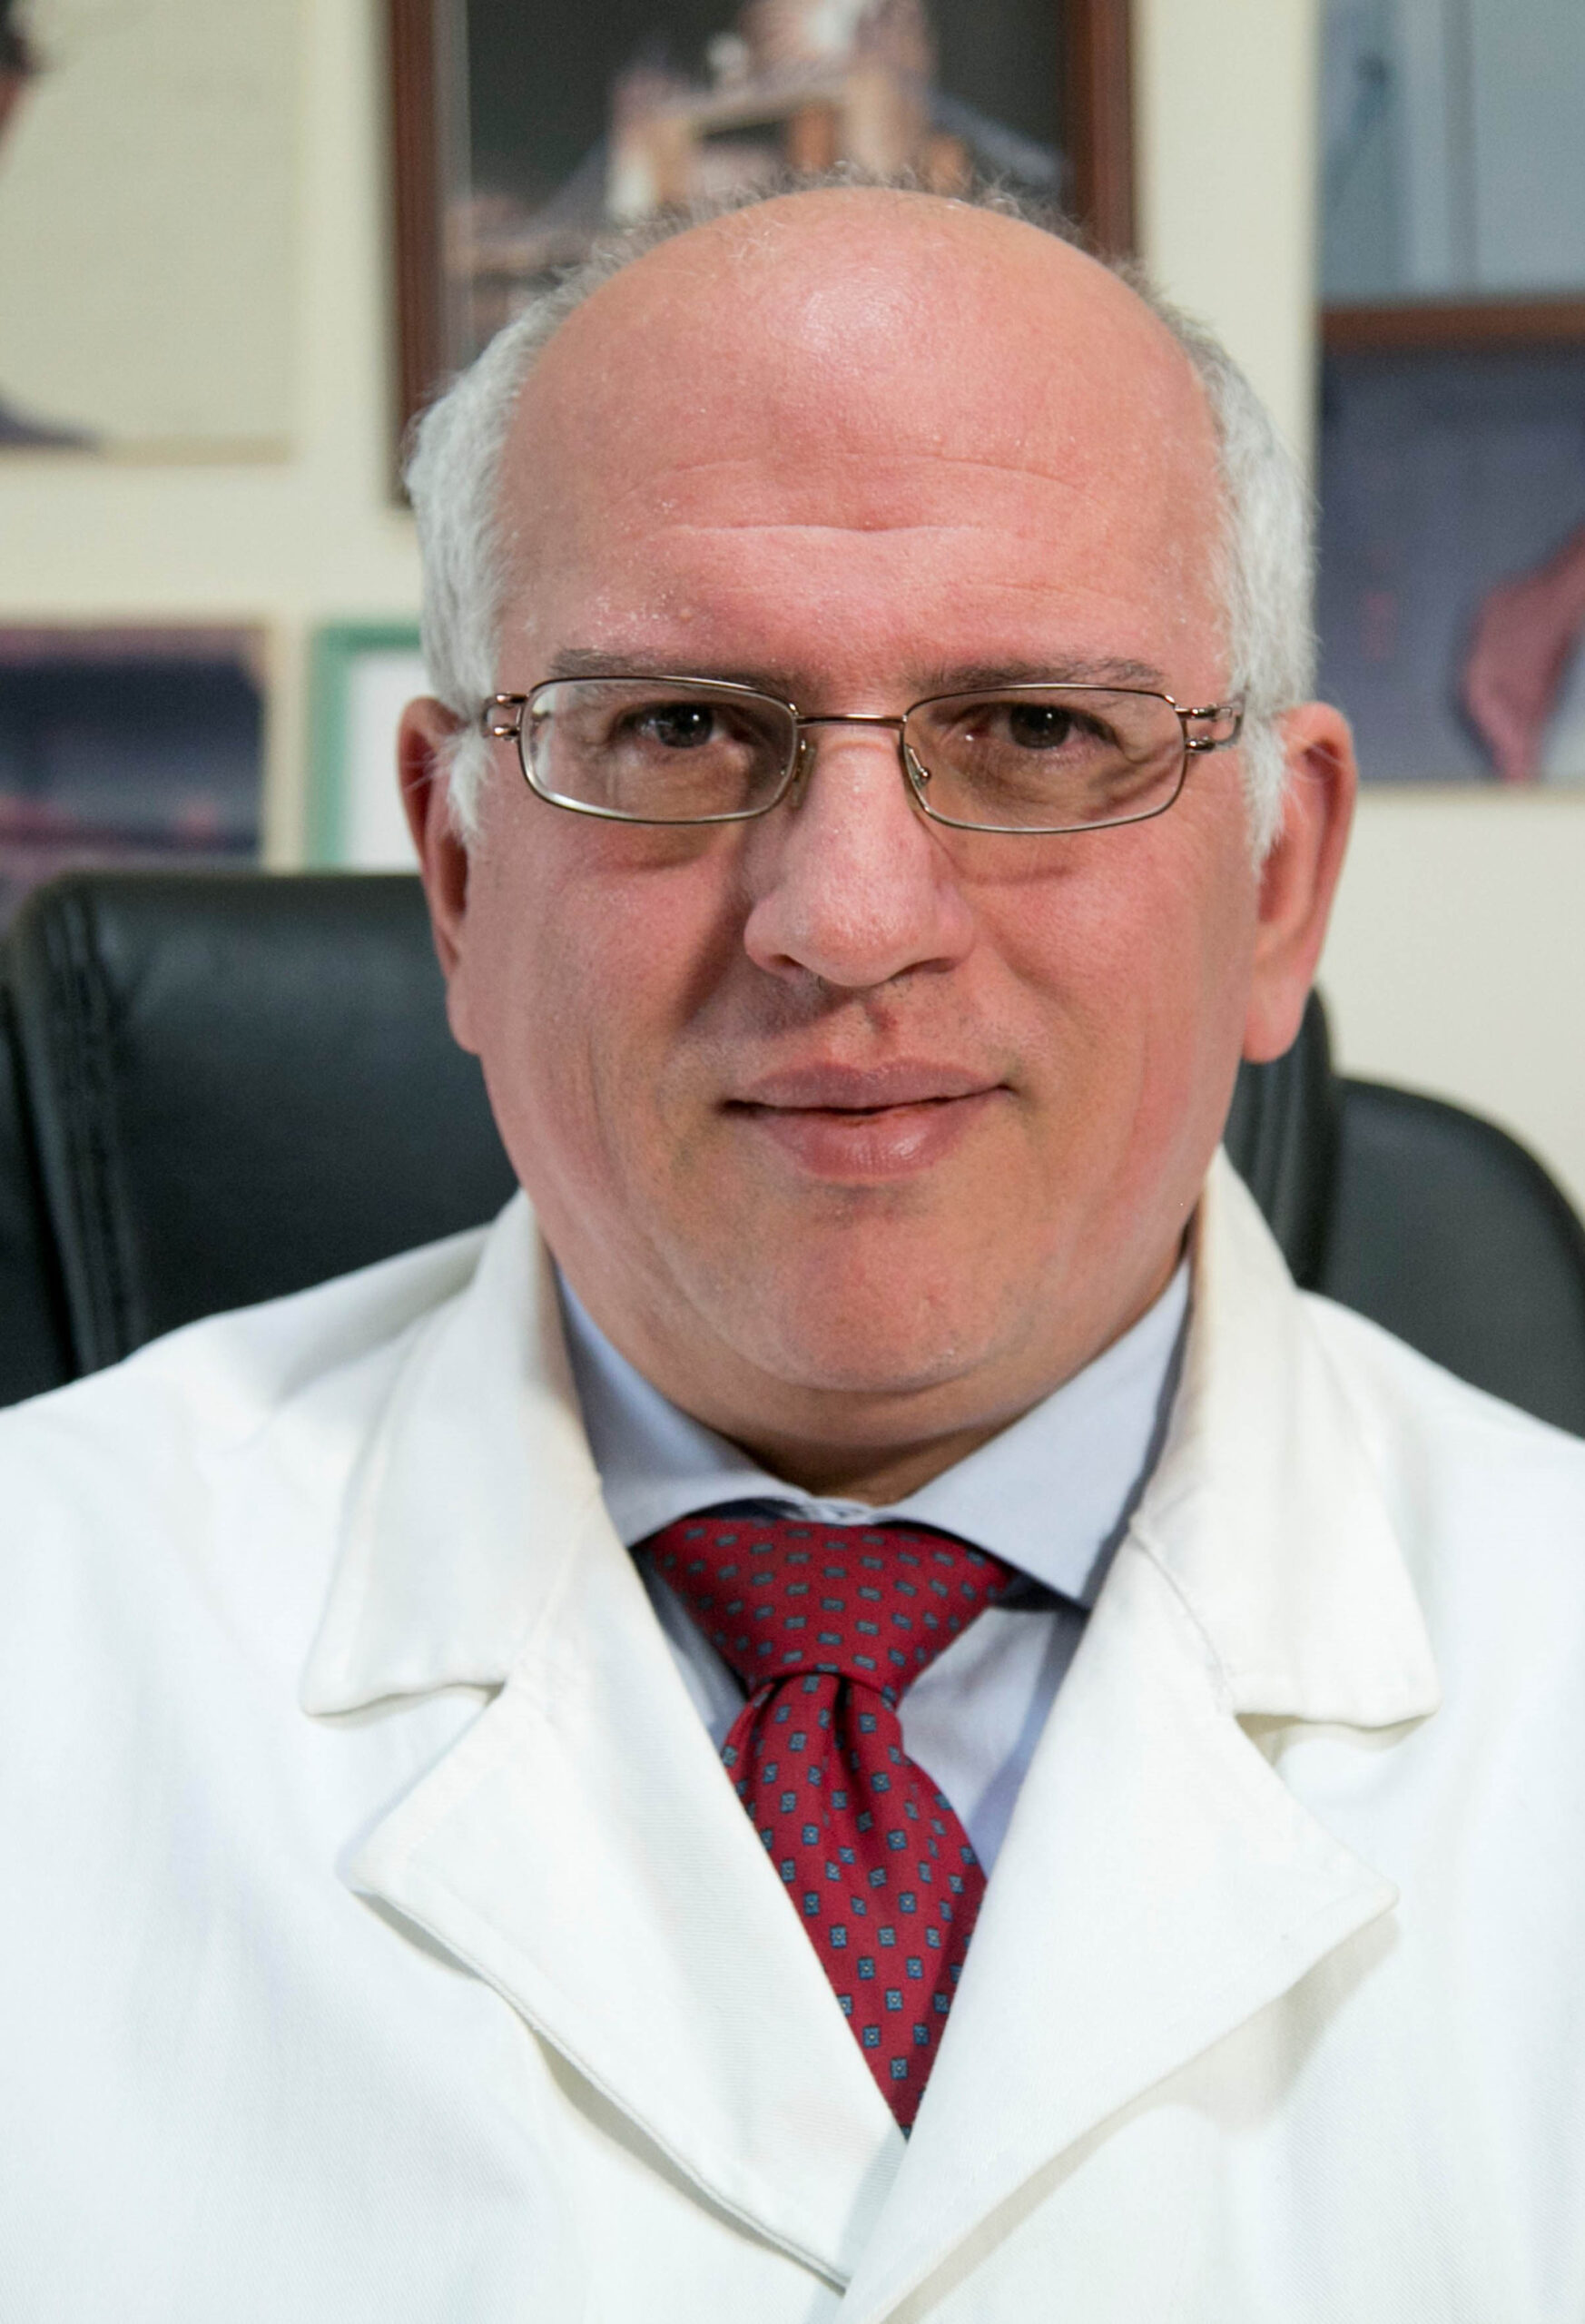 Paolo Ascierto, Prof. Dr. MD's profile portrait